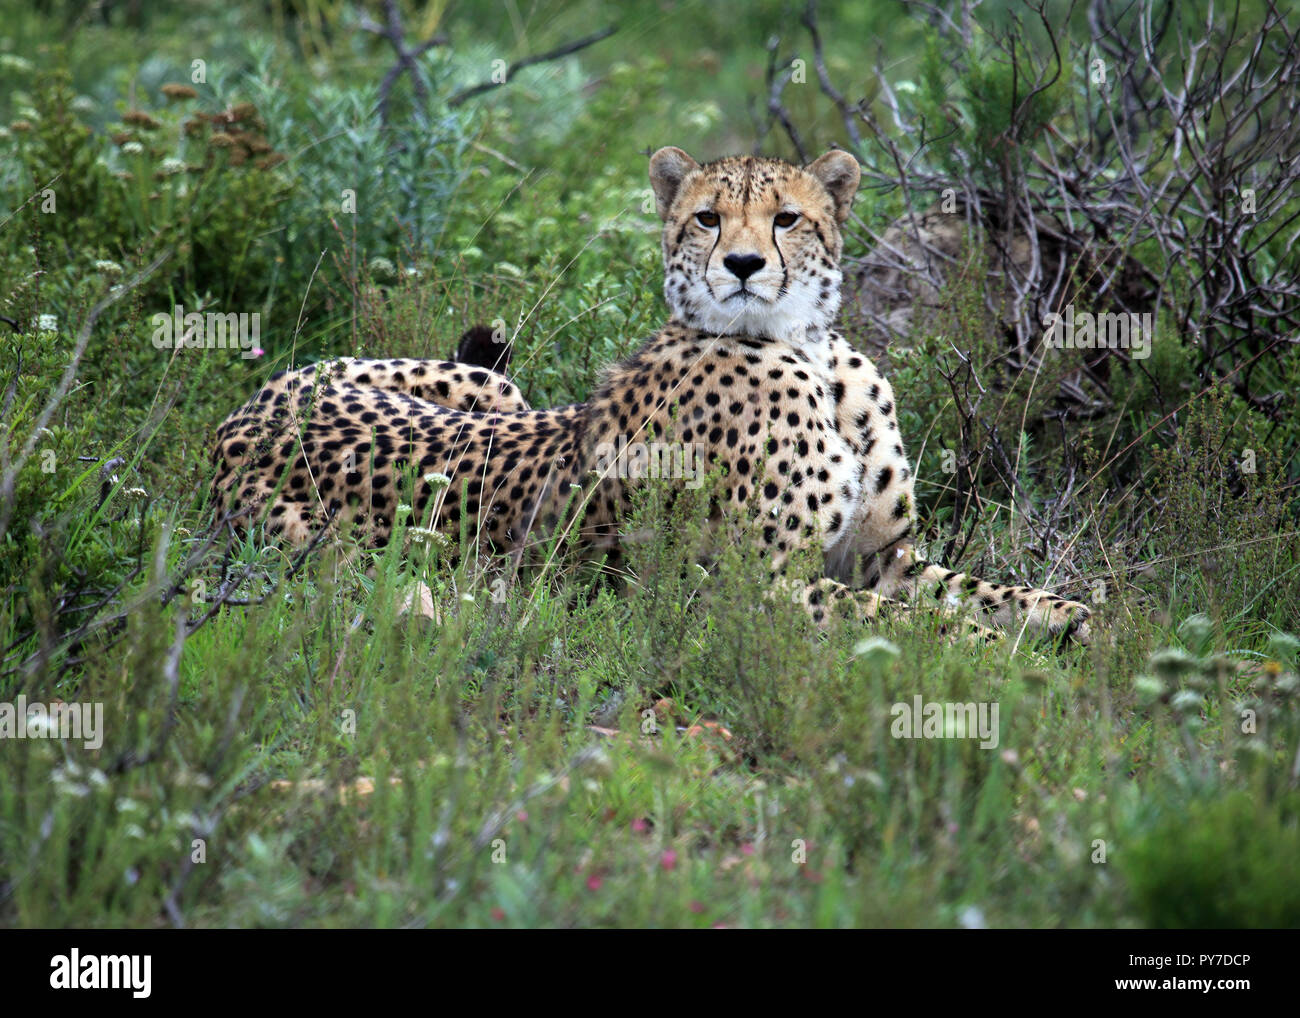 Cheetah crouching and watching prey, Shamwari Game Reserve, South Africa Stock Photo